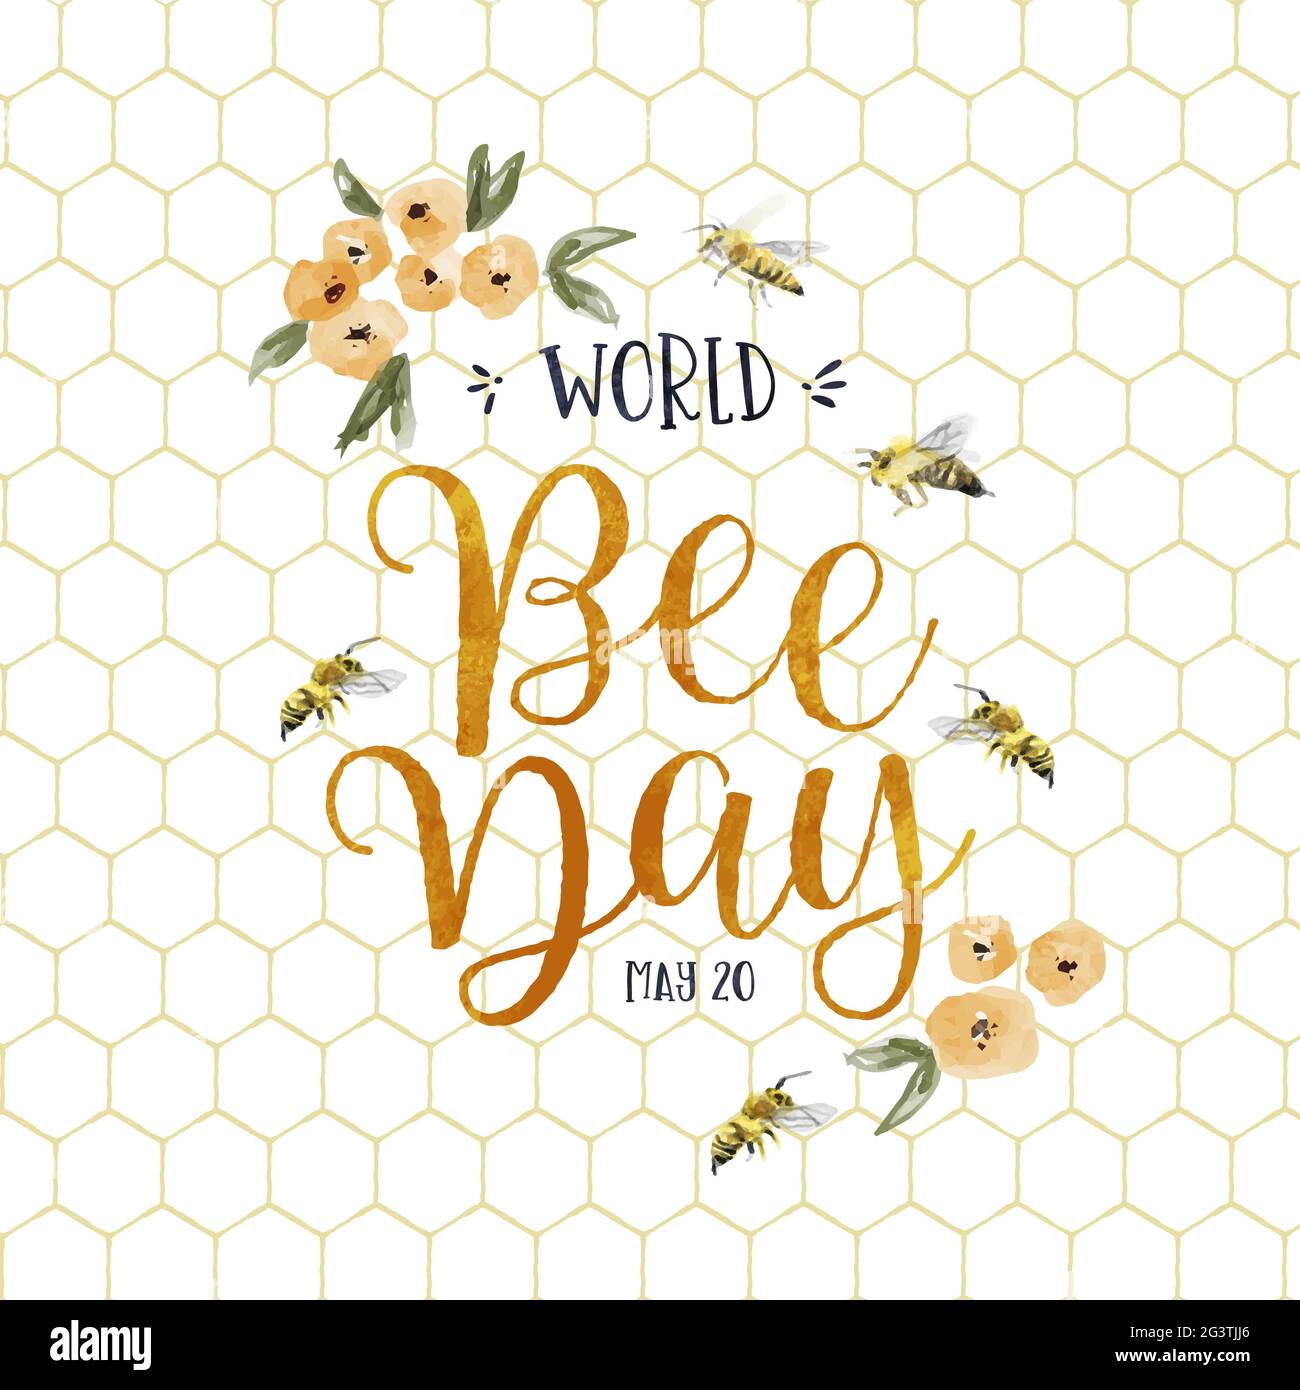 Carte de vœux de la Journée mondiale des abeilles illustration de l'insecte bourdon dessiné à la main avec une décoration de fleur de printemps jaune. Design écologique pour les fêtes de fin d'année Illustration de Vecteur